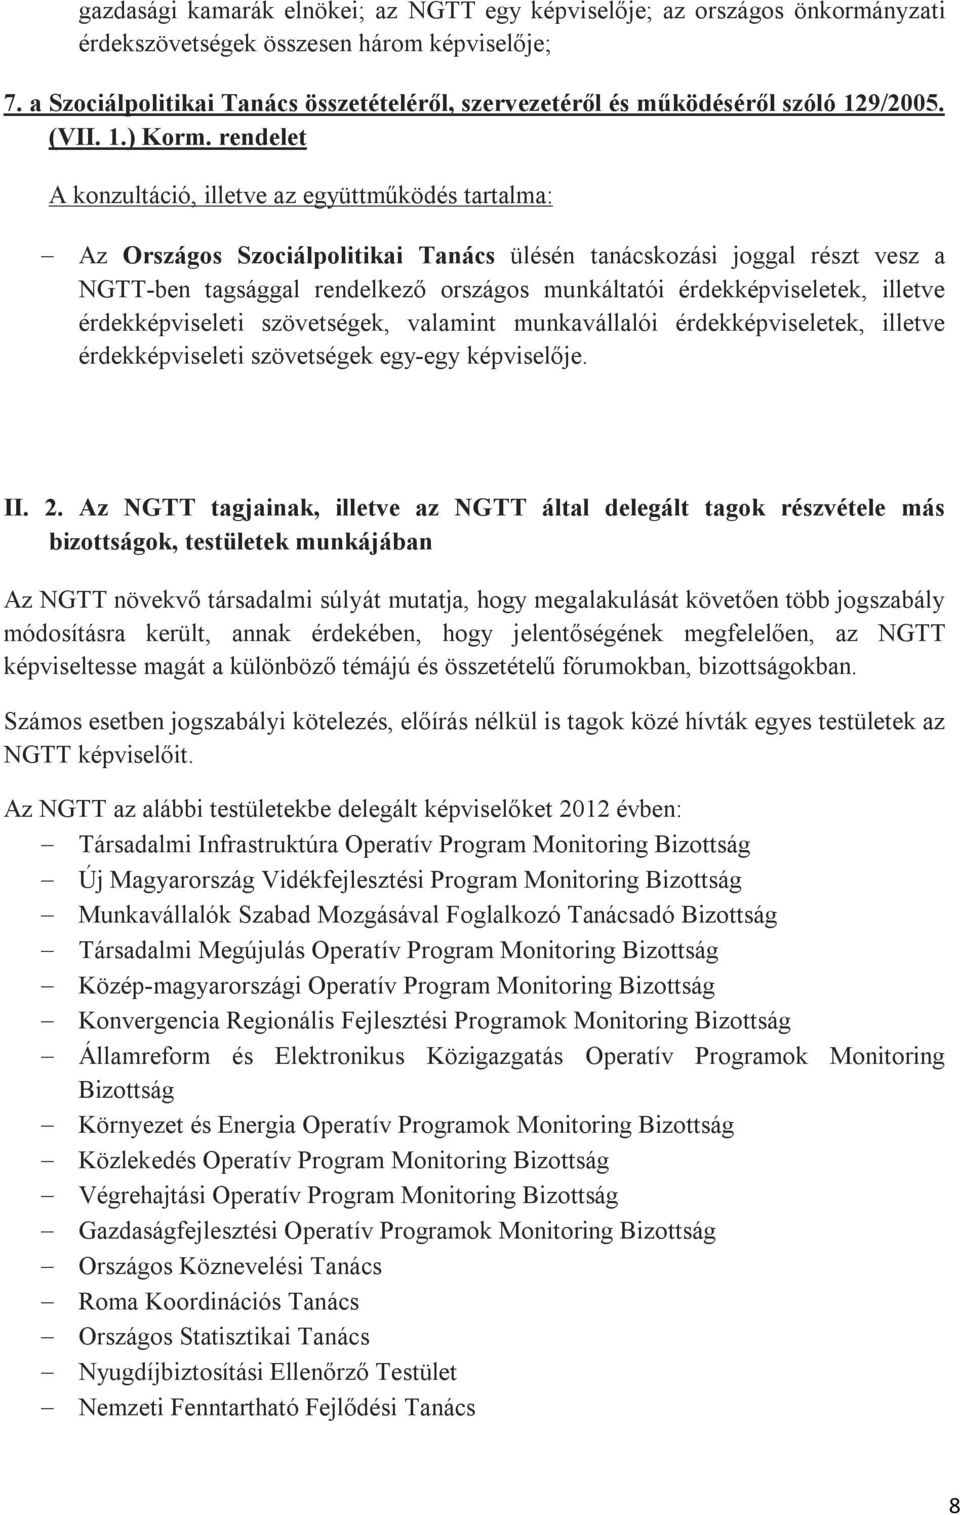 rendelet A konzultáció, illetve az együttműködés tartalma: Az Országos Szociálpolitikai Tanács ülésén tanácskozási joggal részt vesz a NGTT-ben tagsággal rendelkező országos munkáltatói